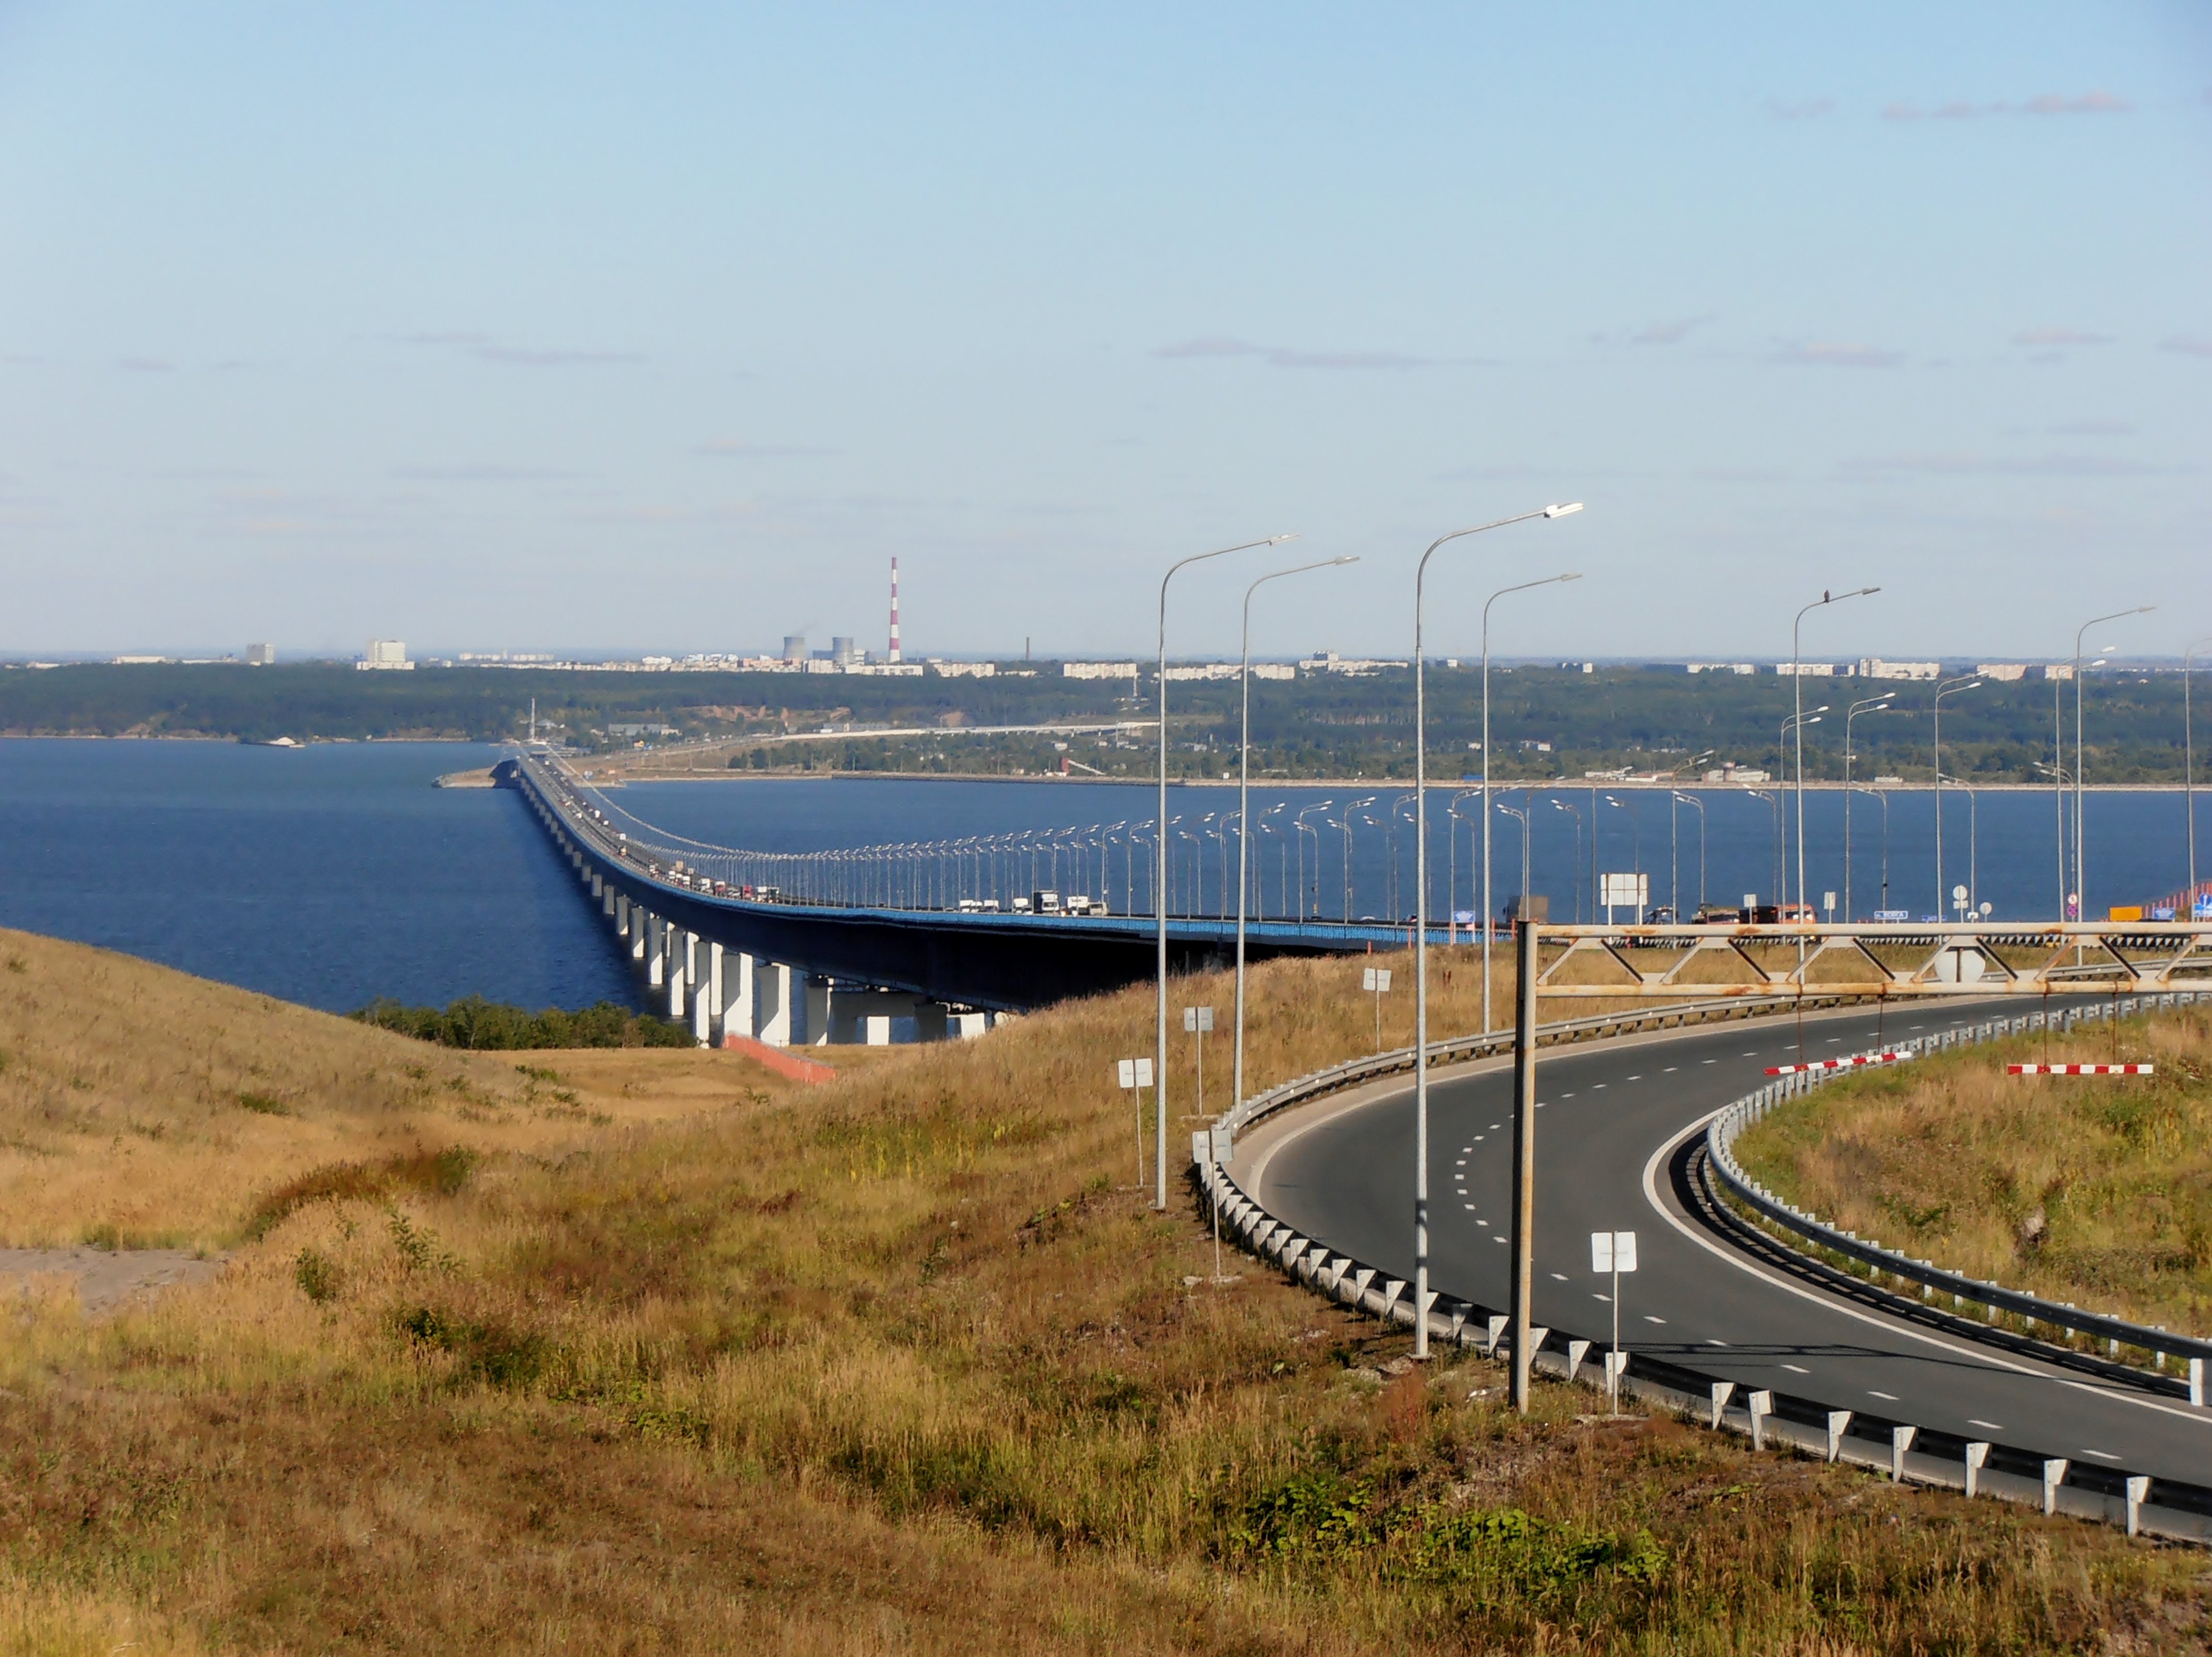 новый мост в ульяновске